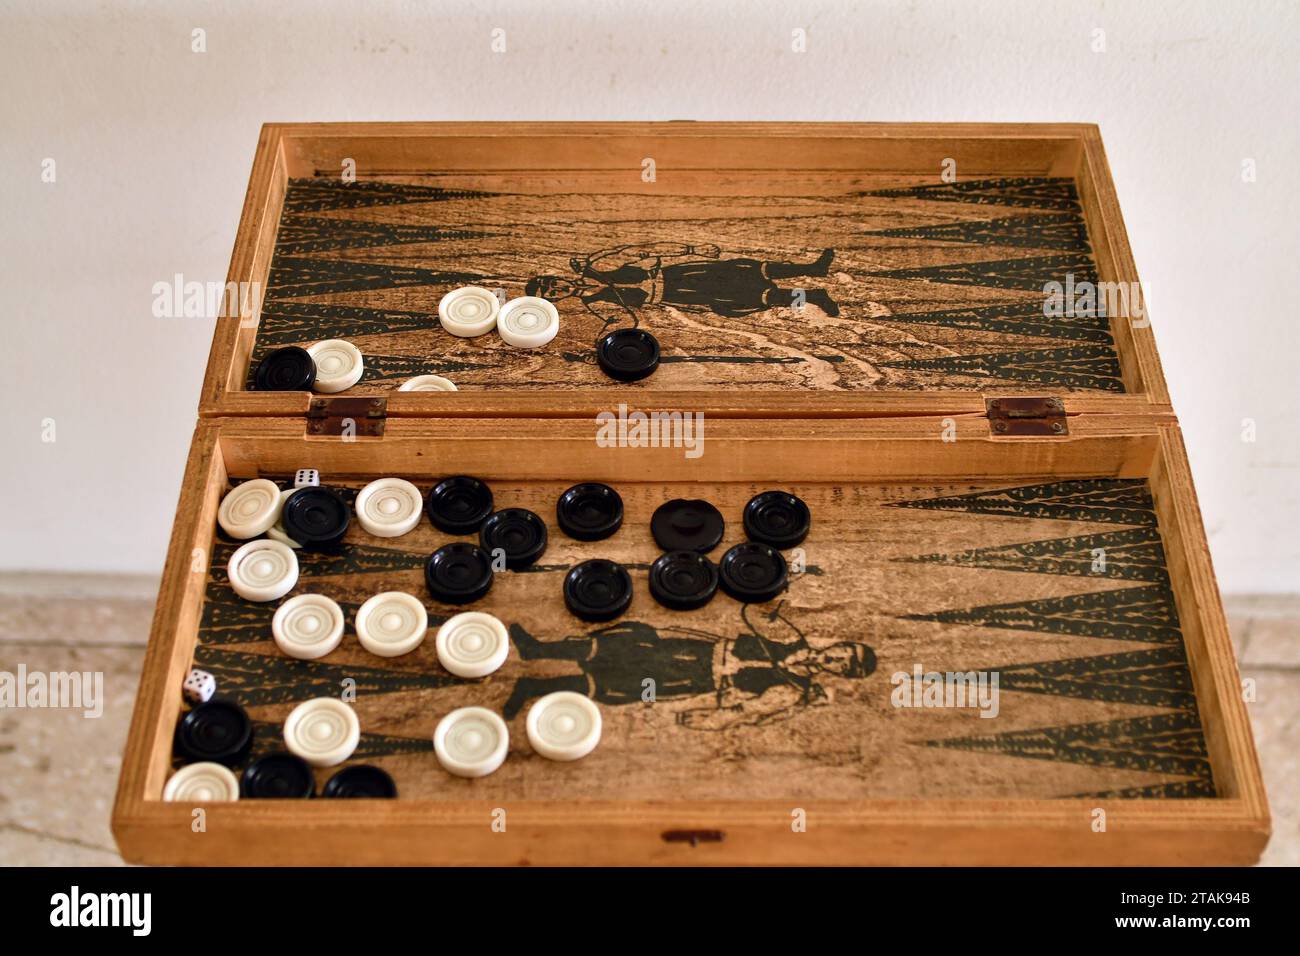 Zypern, Tavli - ein Brettspiel ähnlich dem Backgammon, das in Griechenland, Zypern und der Türkei sehr verbreitet ist Stockfoto